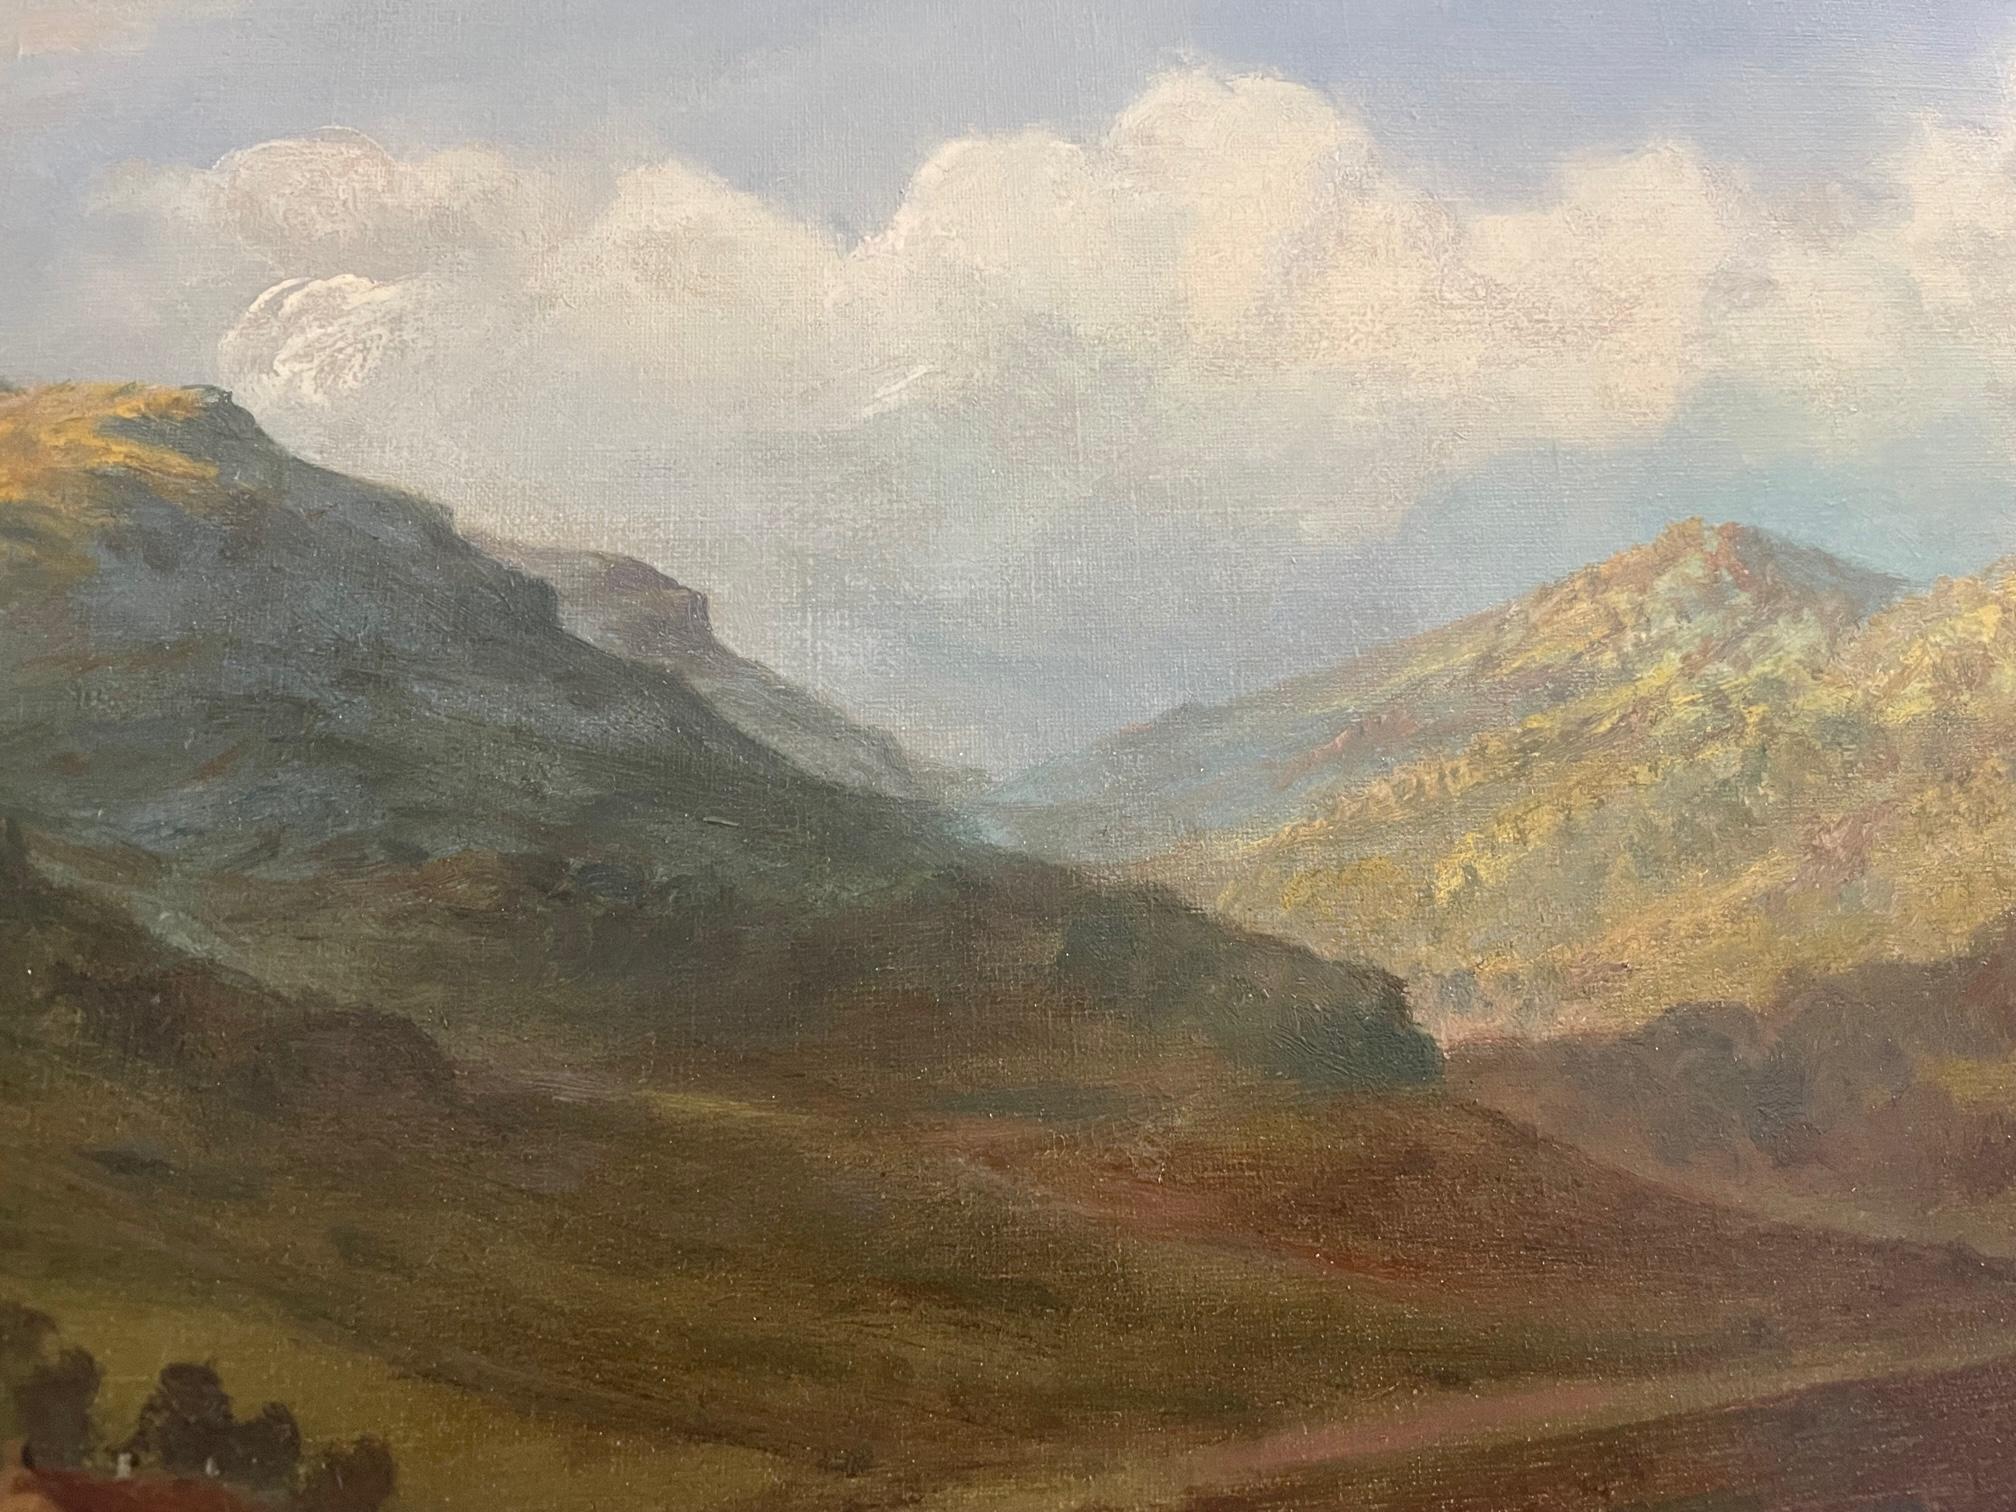 Highland Cattle Watering est une peinture de paysage/bétail de la fin du XIXe siècle/début du XXe siècle de l'artiste écossais Douglas Cameron. Il s'agit d'une peinture à l'huile sur toile avec un cadre doré très décoratif, signée par l'artiste dans